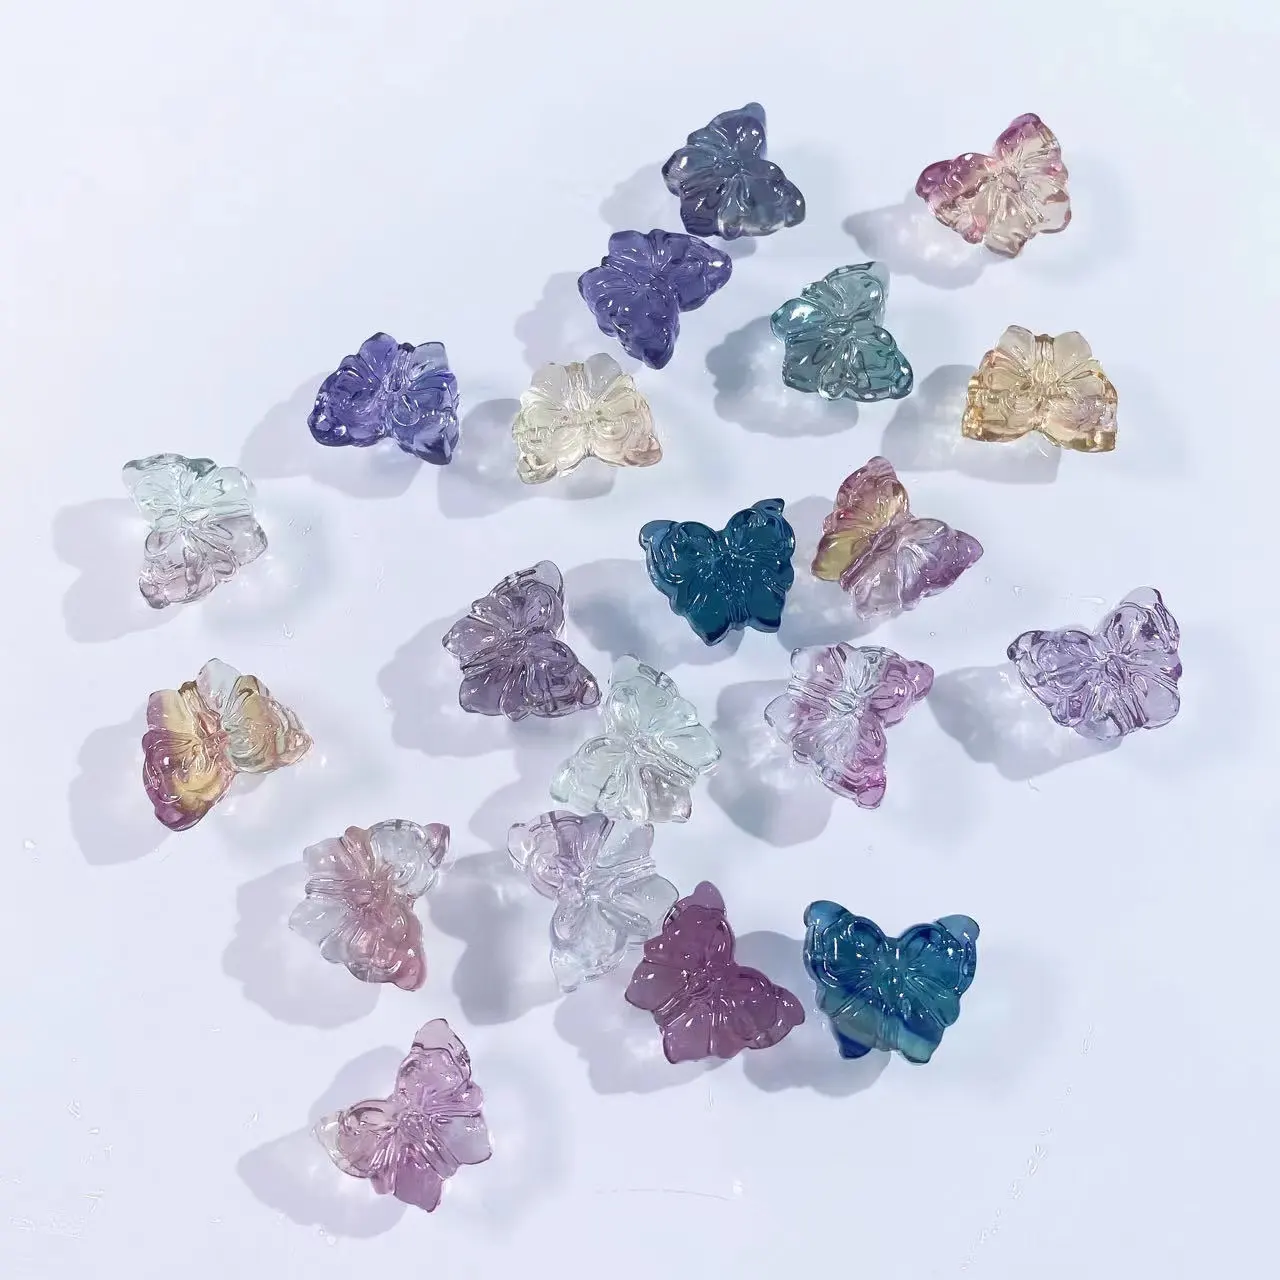 Commercio all'ingrosso di cristallo naturale di alta qualità intaglio litio Mica ciondolo Mini forma di stella per amore